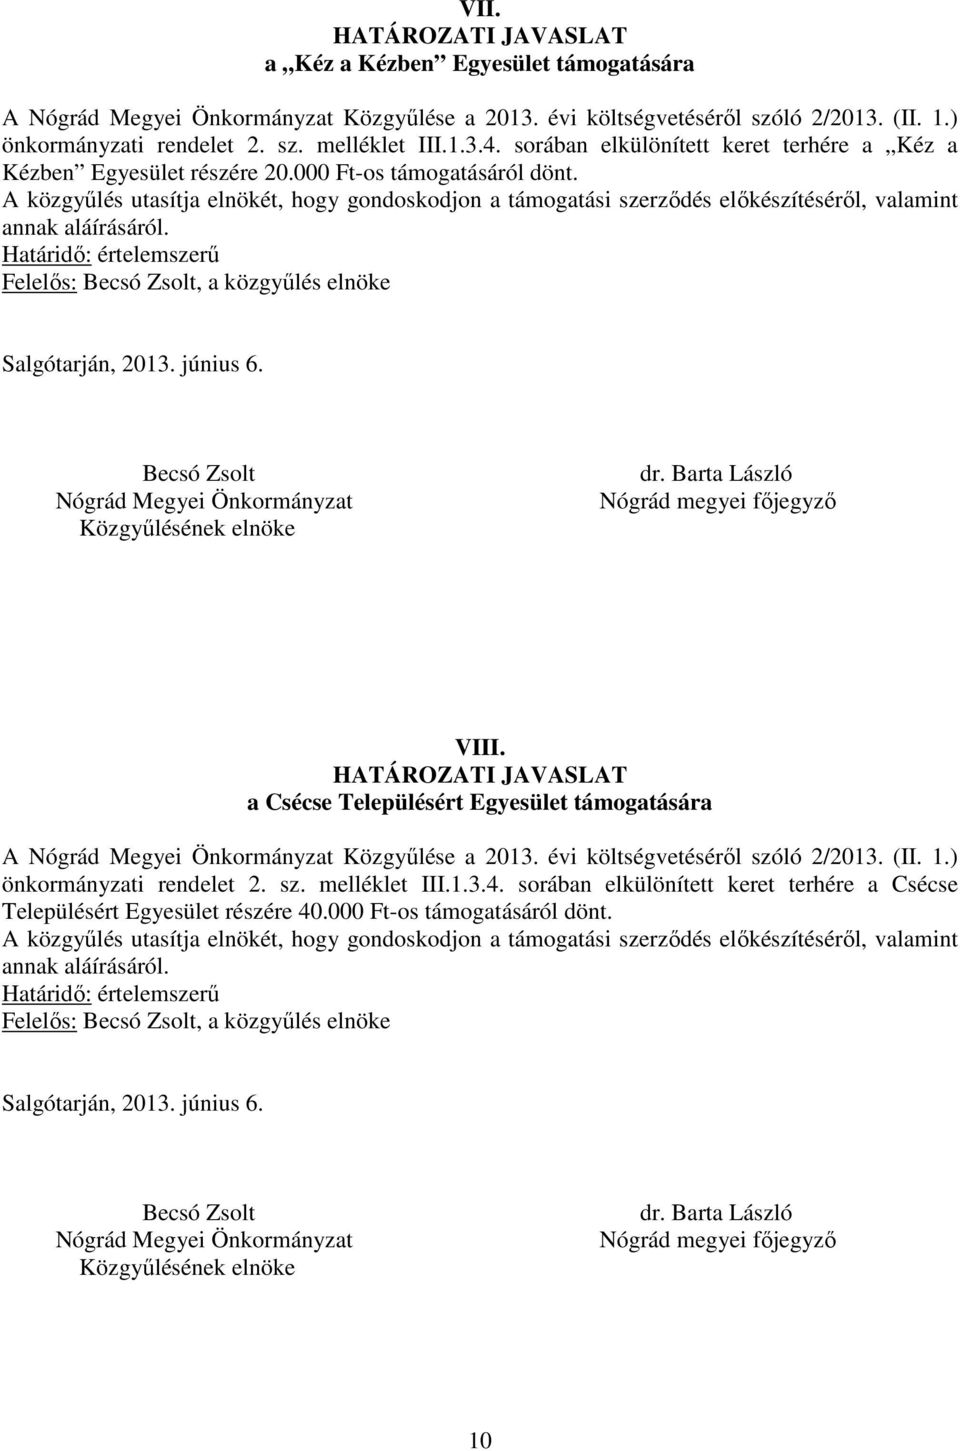 a Csécse Településért Egyesület támogatására A Közgyűlése a 2013. évi költségvetéséről szóló 2/2013. (II. 1.) önkormányzati rendelet 2. sz. melléklet III.